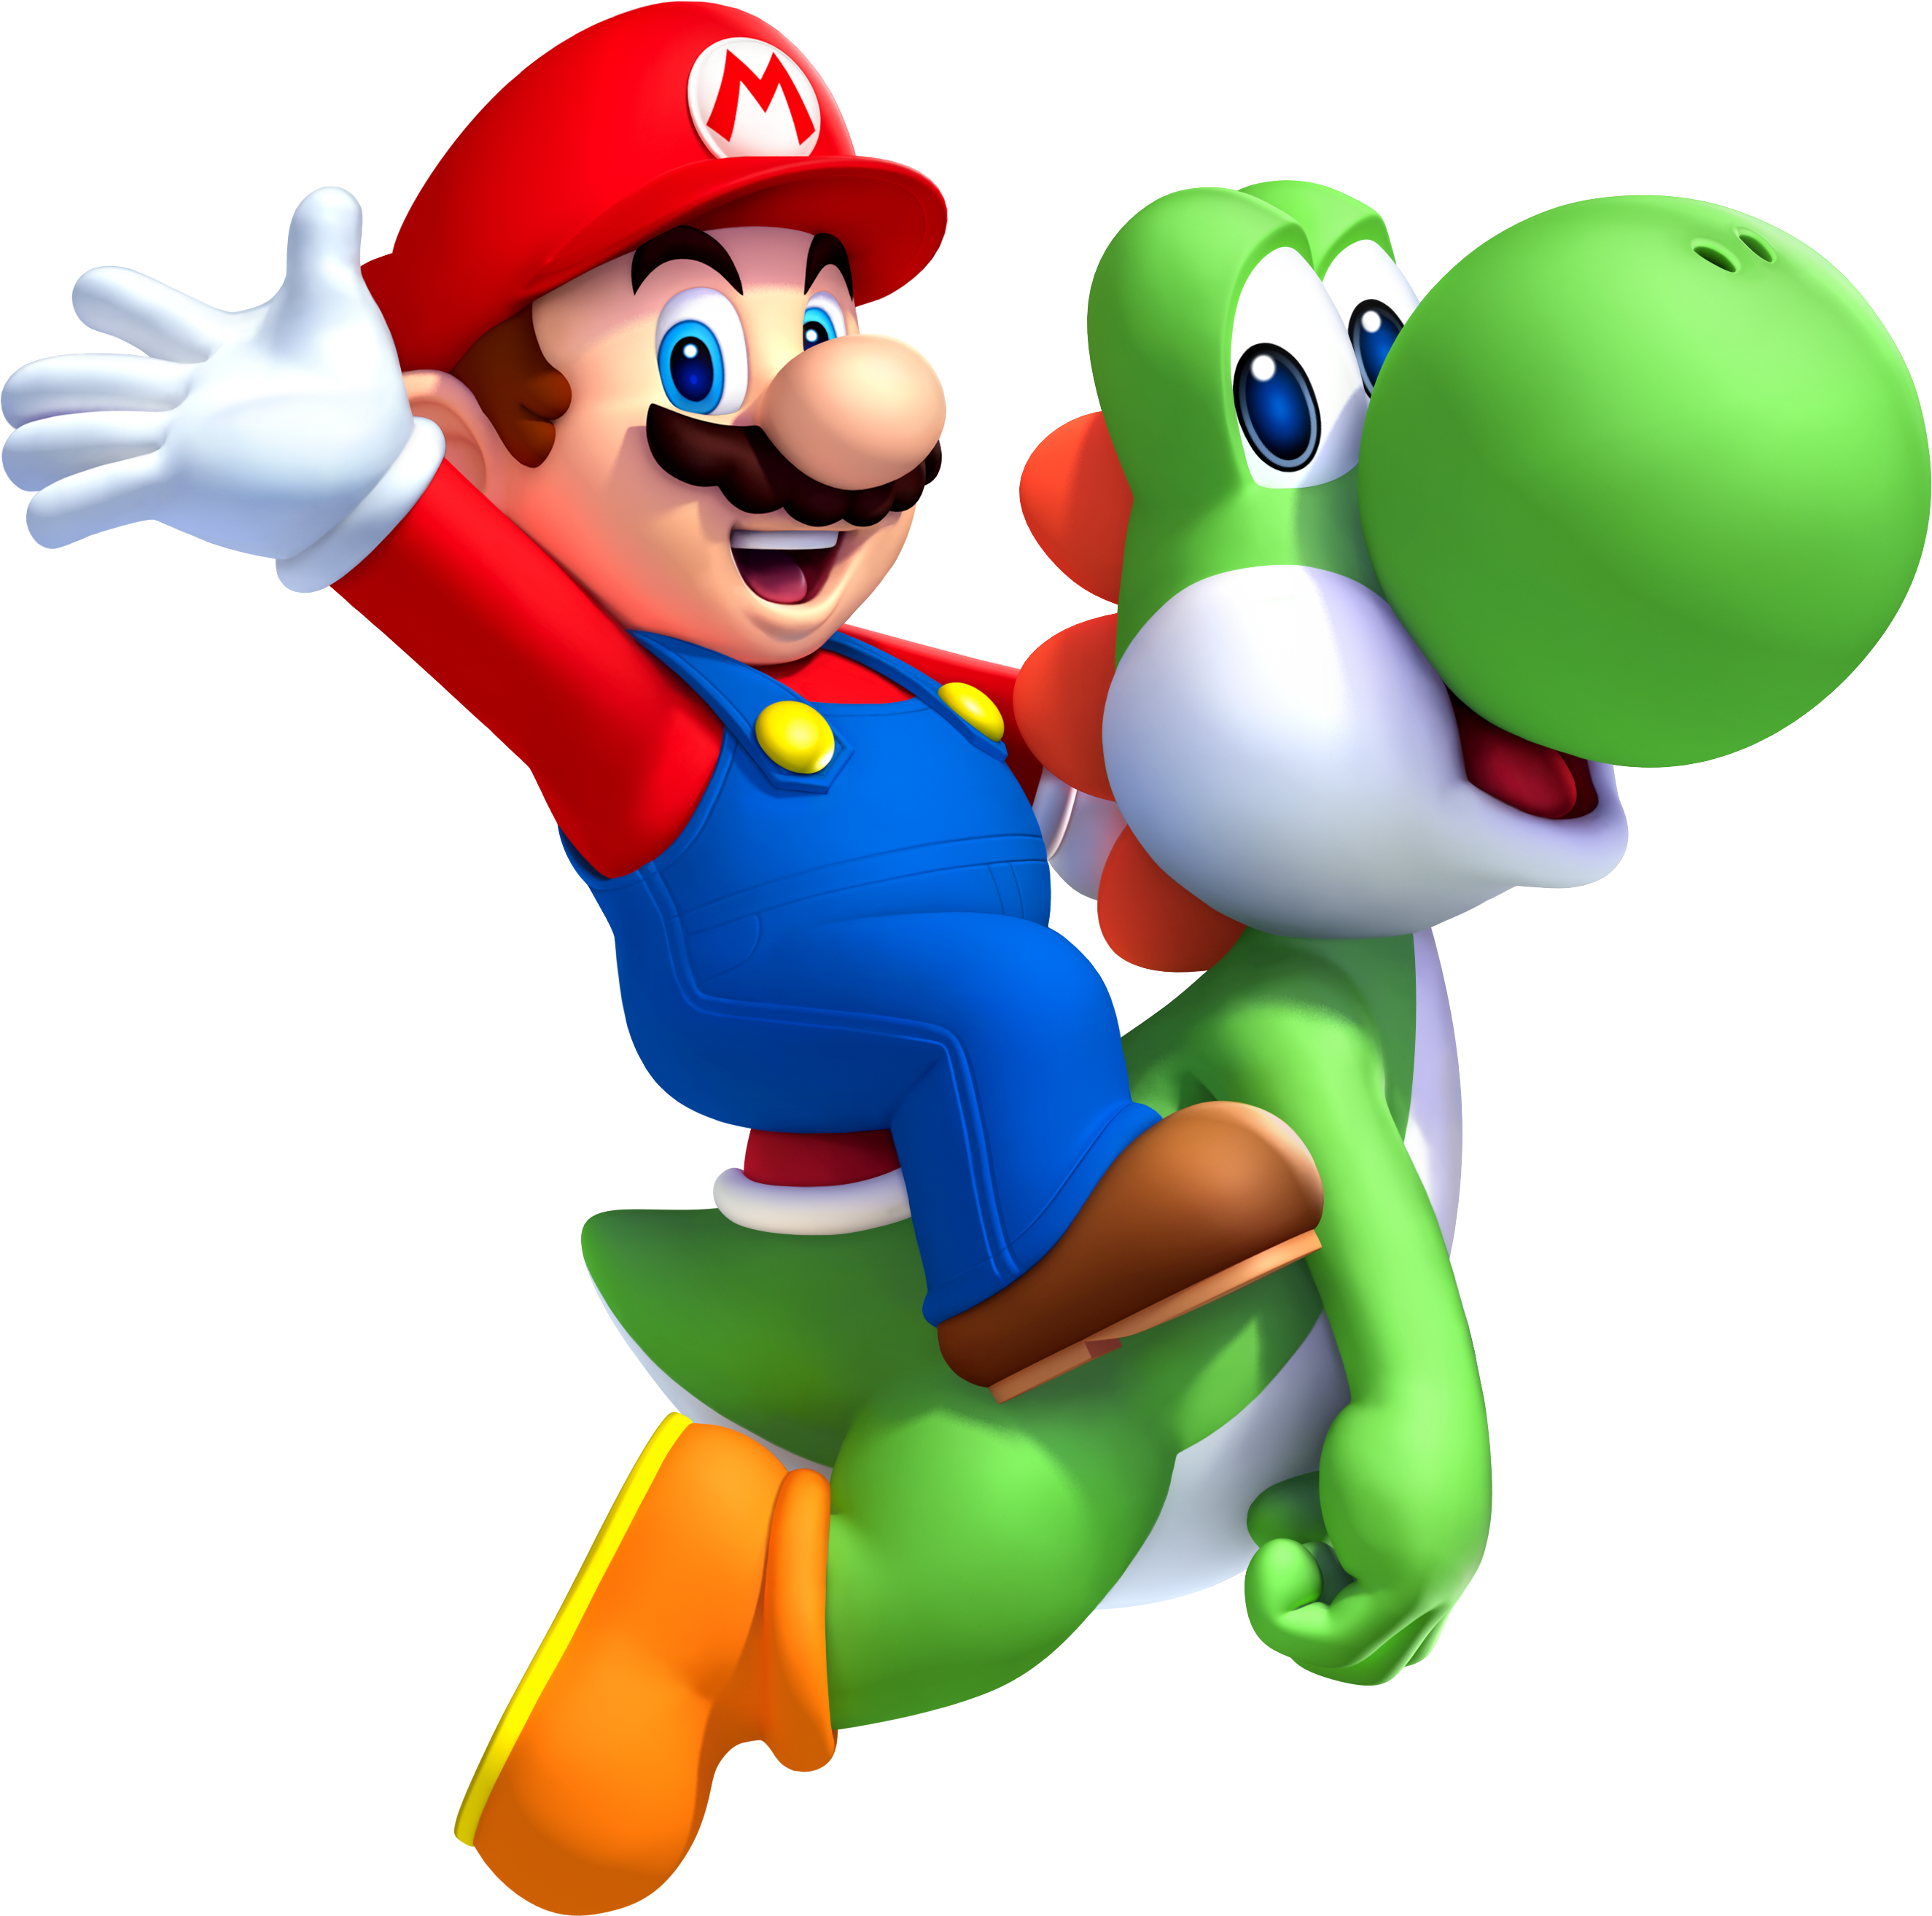 New Super Mario Bros - New Super Mario Bros Wii (2650x2628)